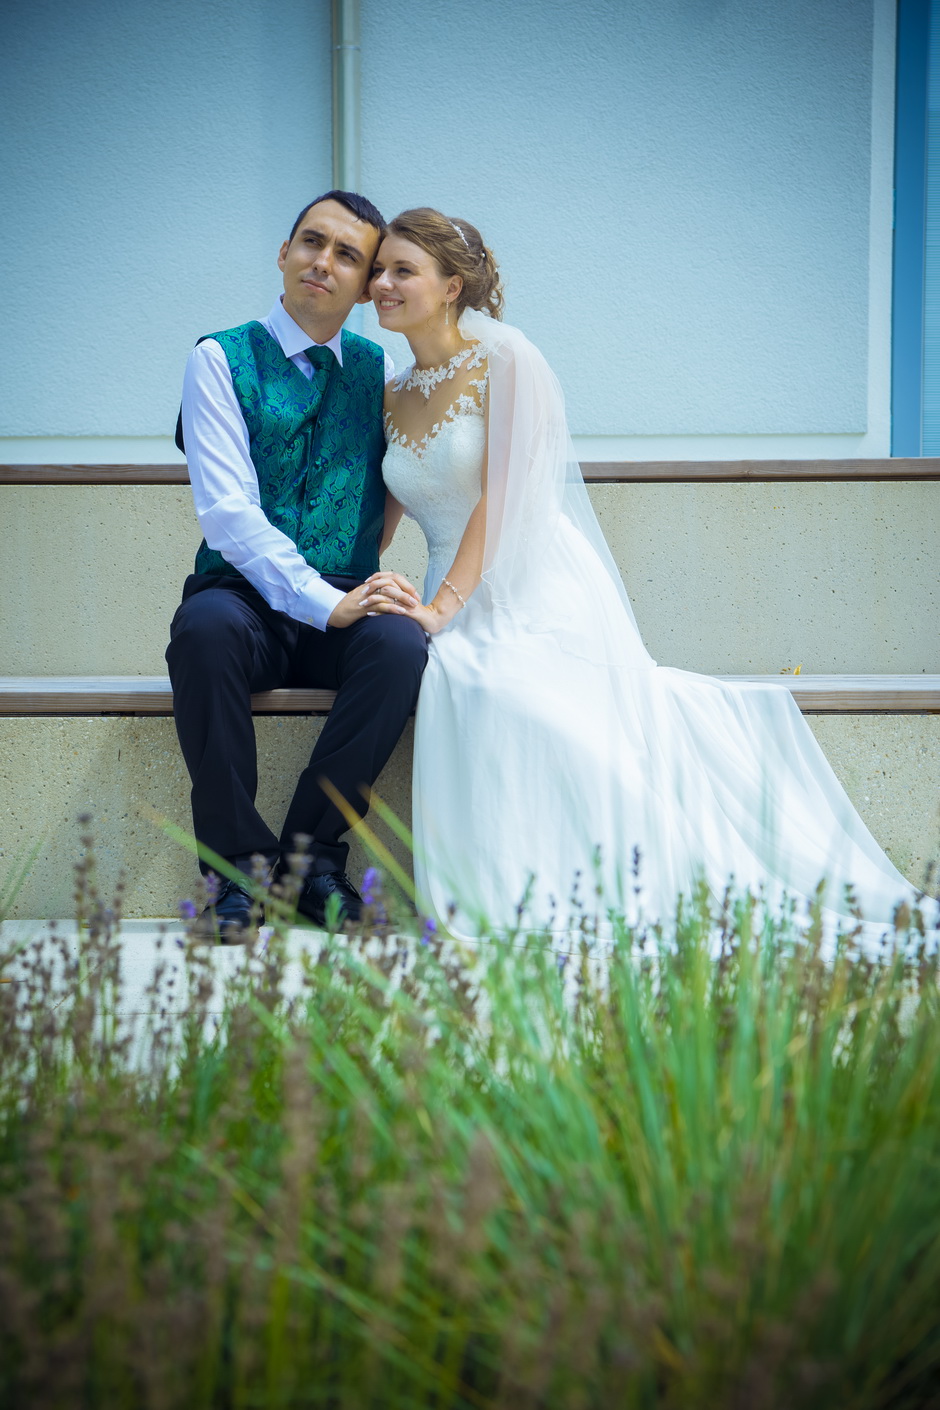 Angebot vom Hochzeitsfotografen Salzwedel